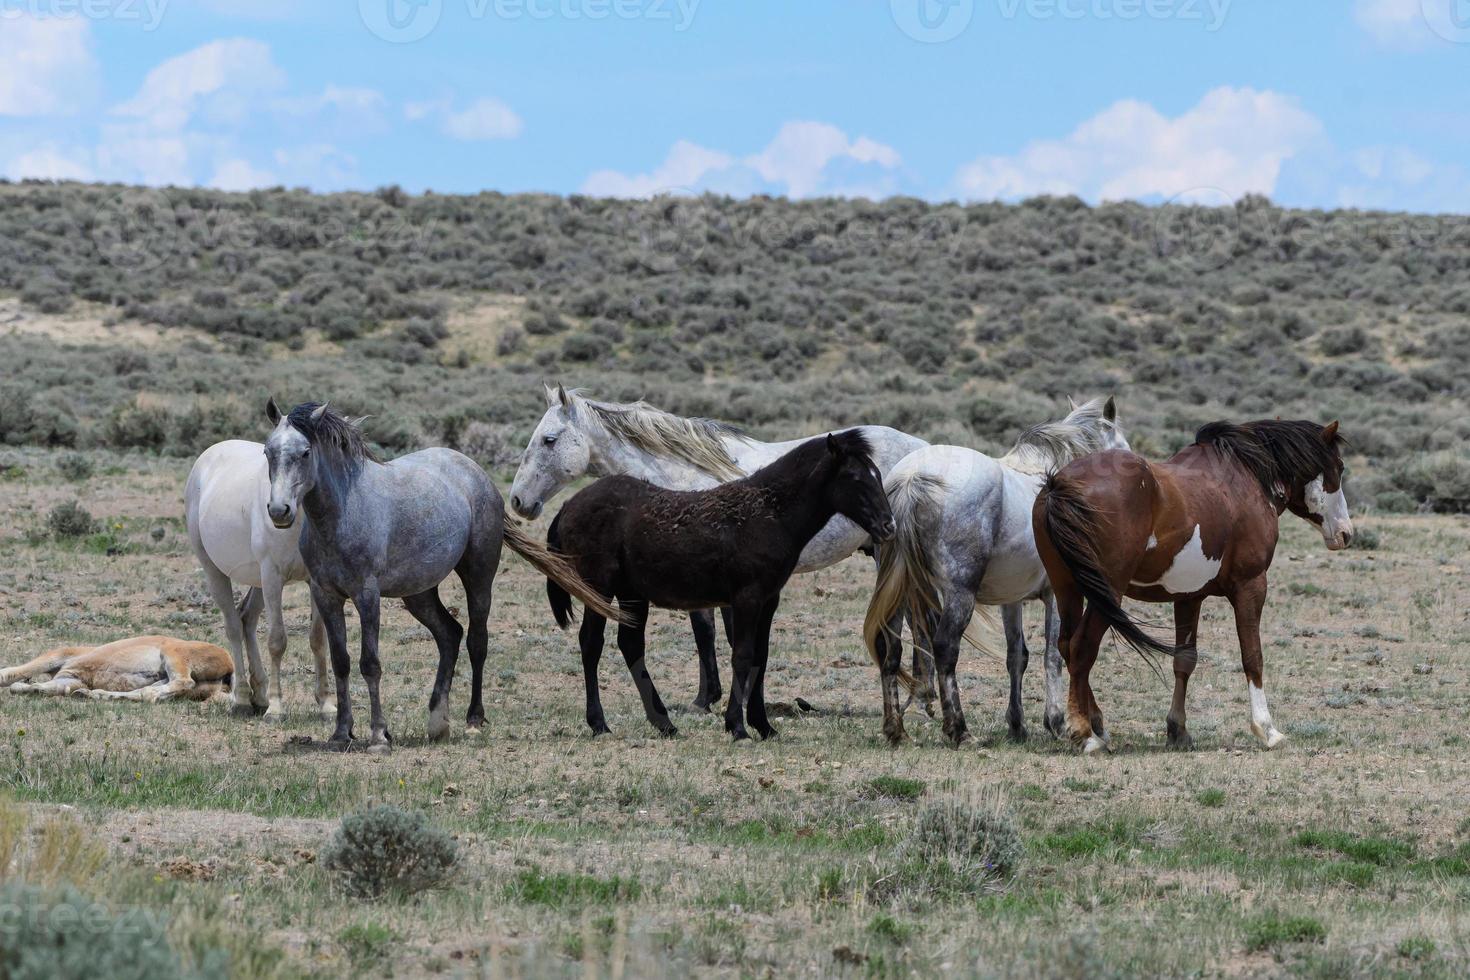 cavalos mustang selvagens no colorado foto